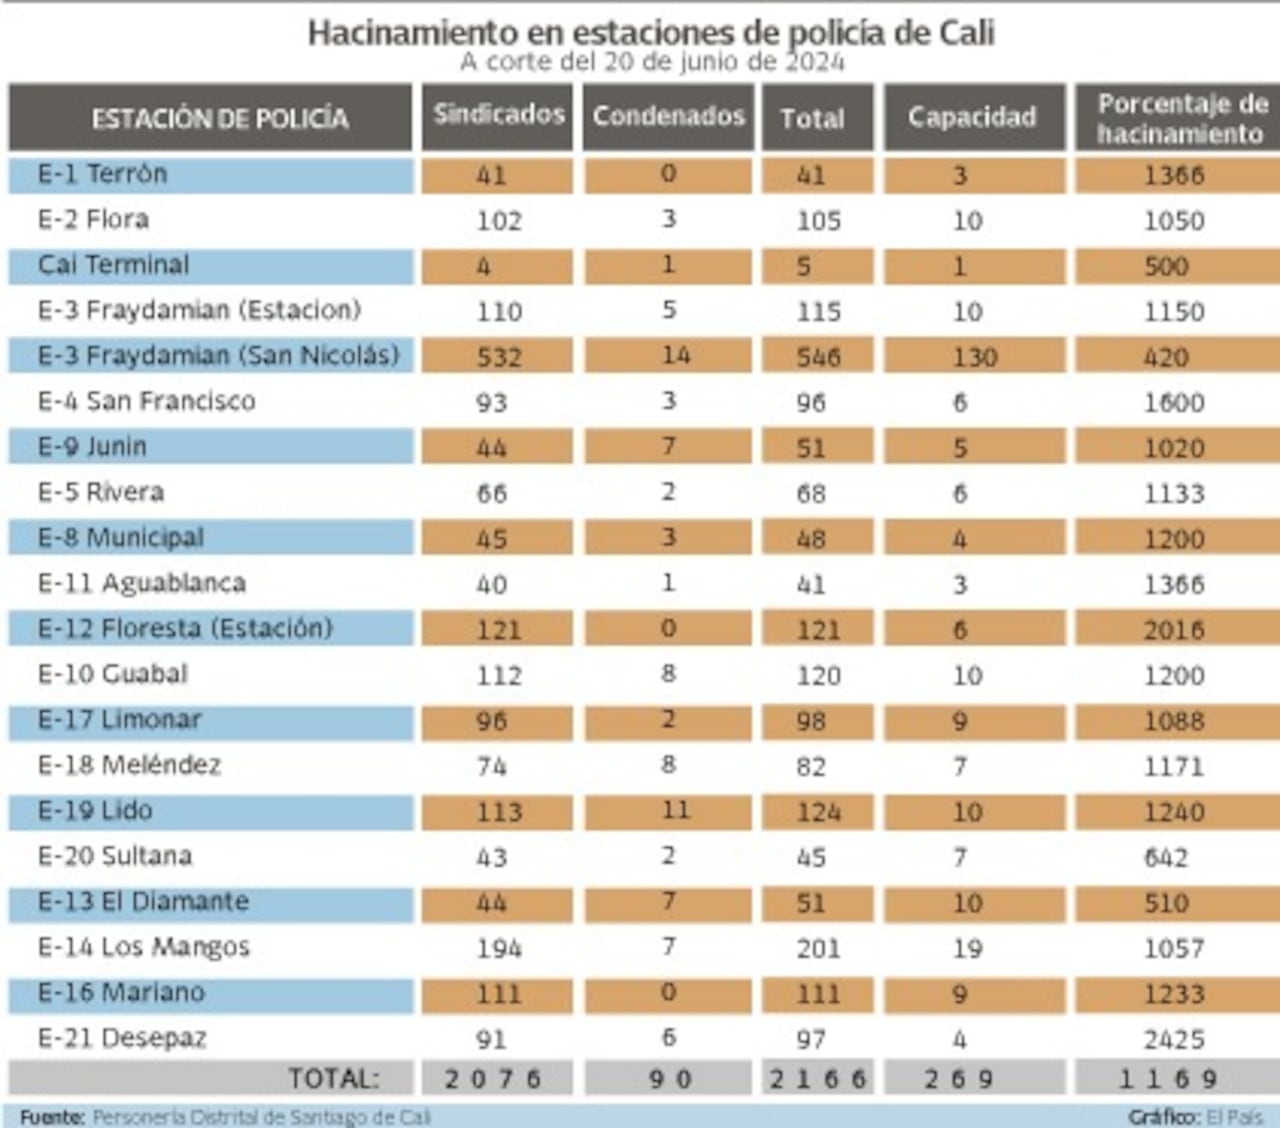 Estas son las cifras de hacinamiento en las estaciones de Policía de Cali, según datos revelados por la Personería de Cali a El País.